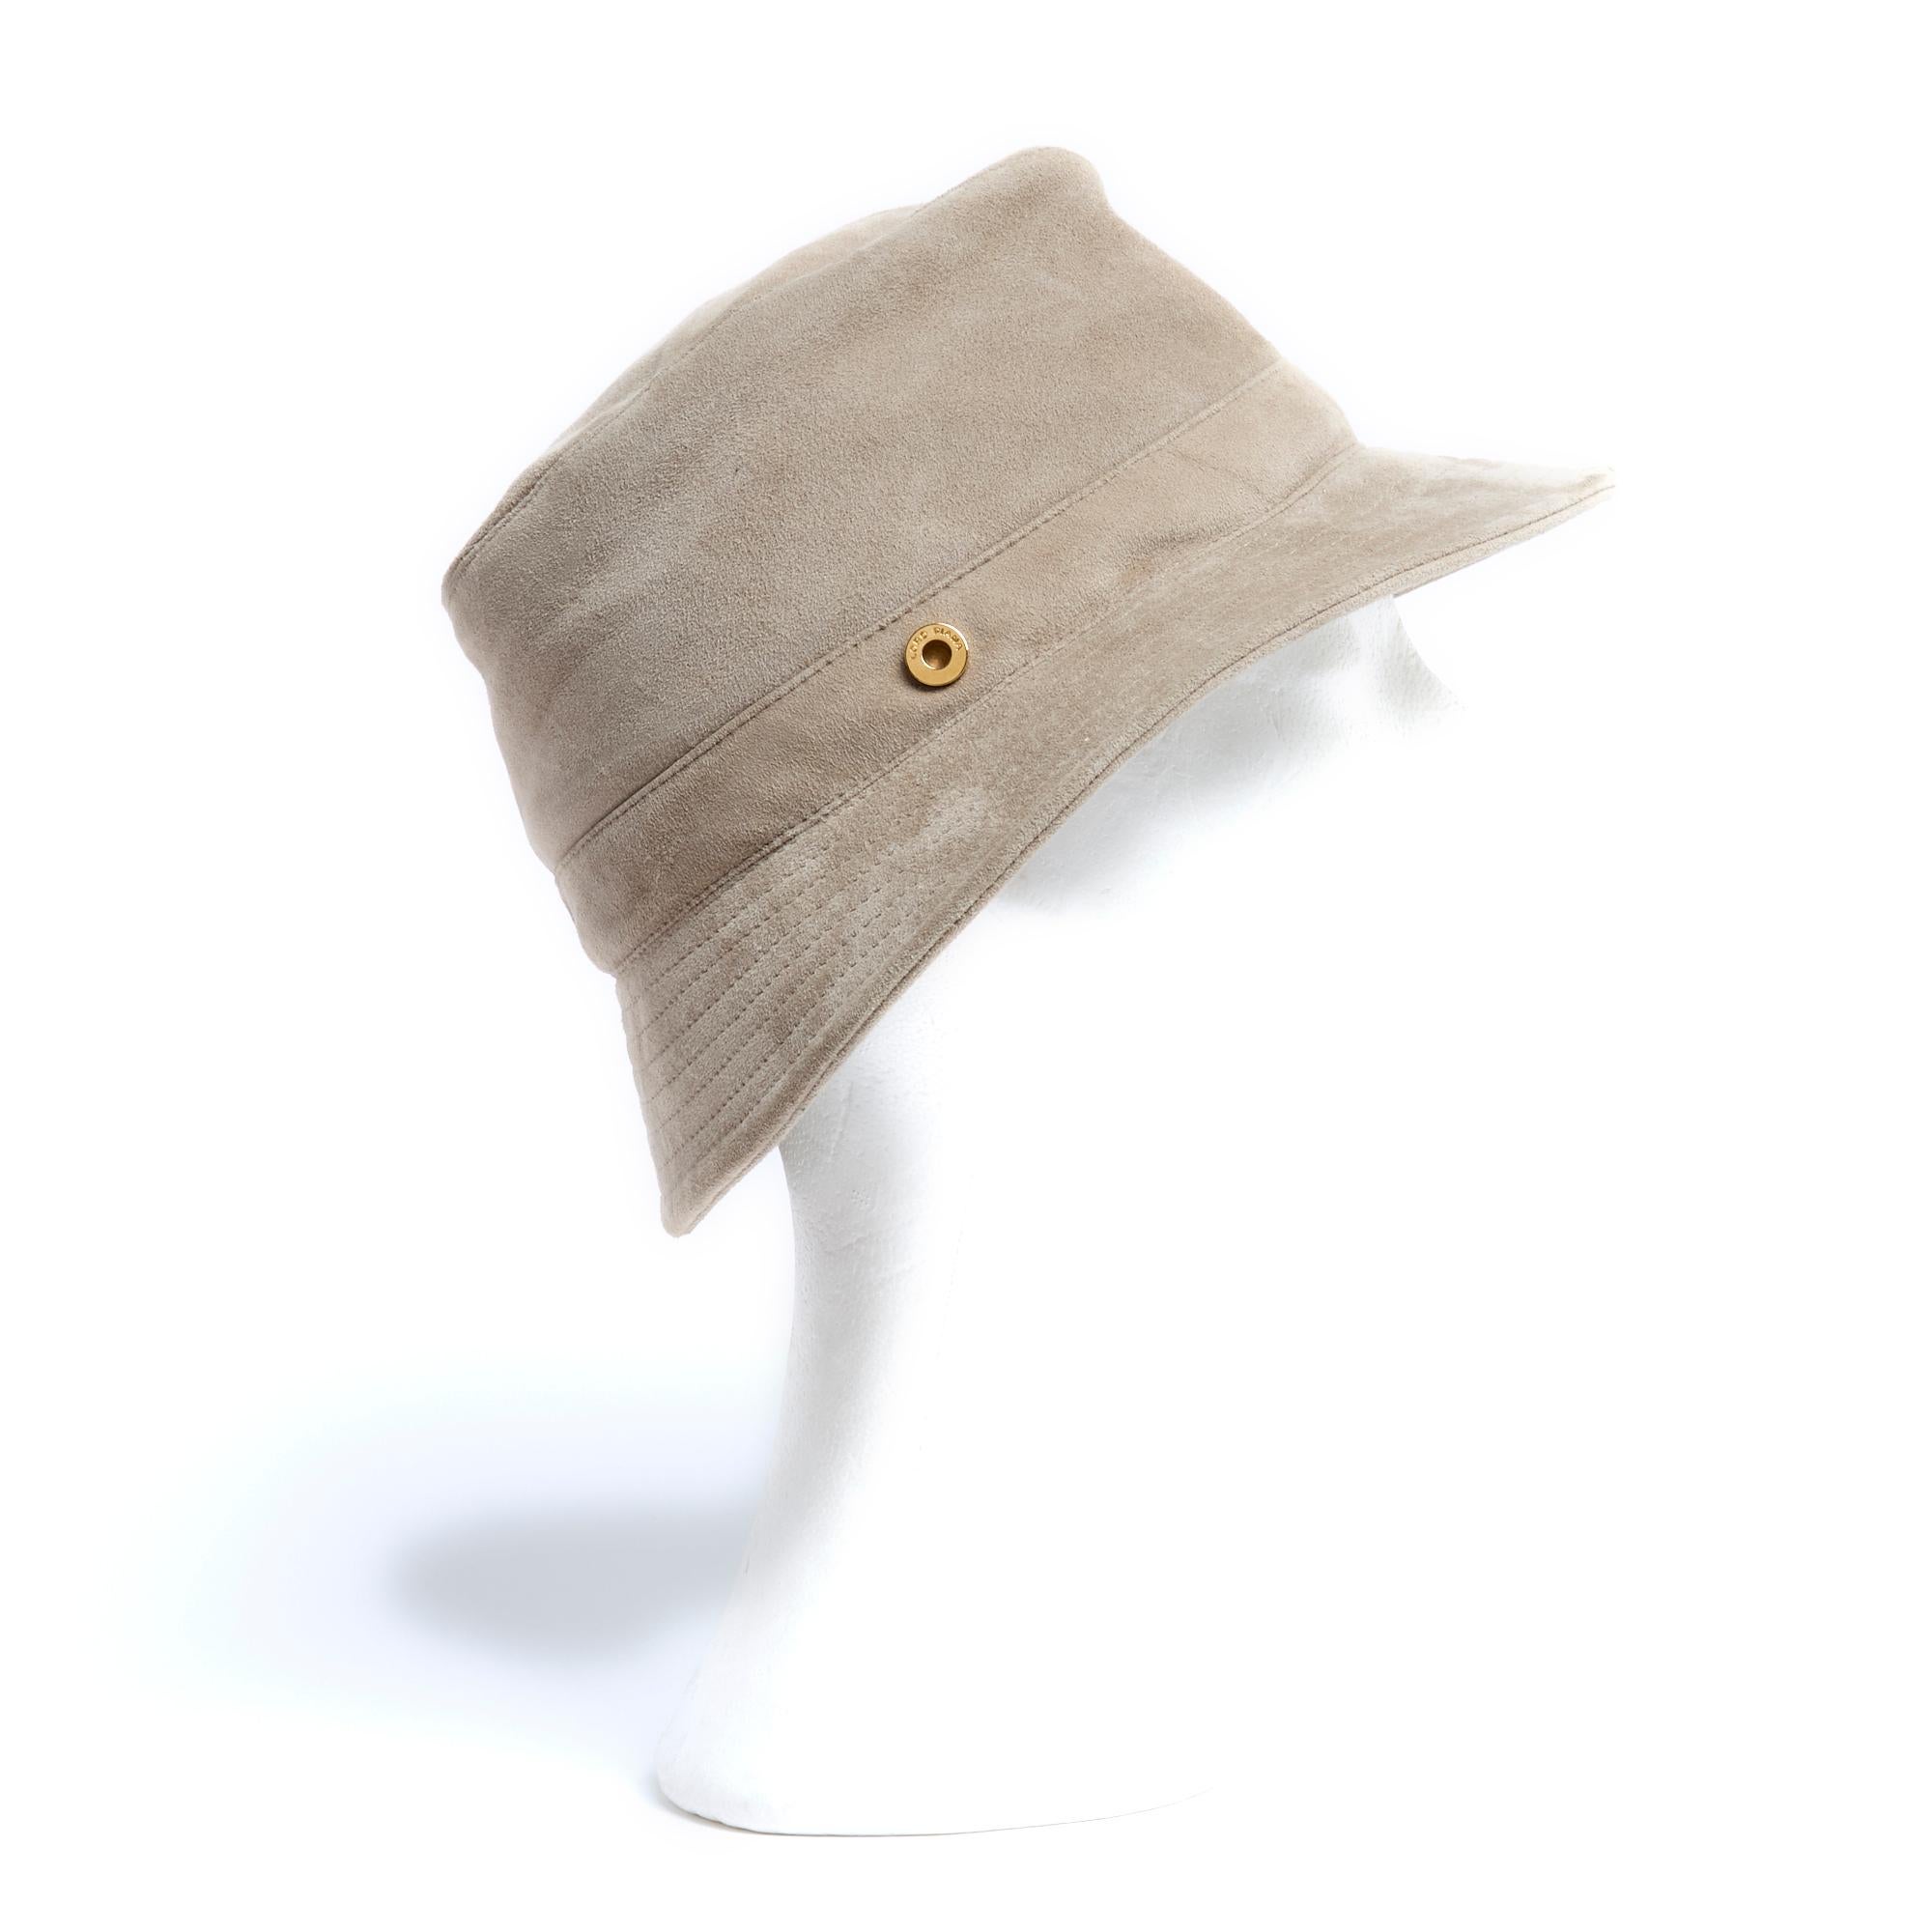 Chapeau baquet Loro Piana en daim gris beige avec bords surpiqués, doublure en toile satinée. Taille M, environ 56 cm de tour de tête. Le chapeau a été porté mais est en très bon état, parfait pour les journées ensoleillées.